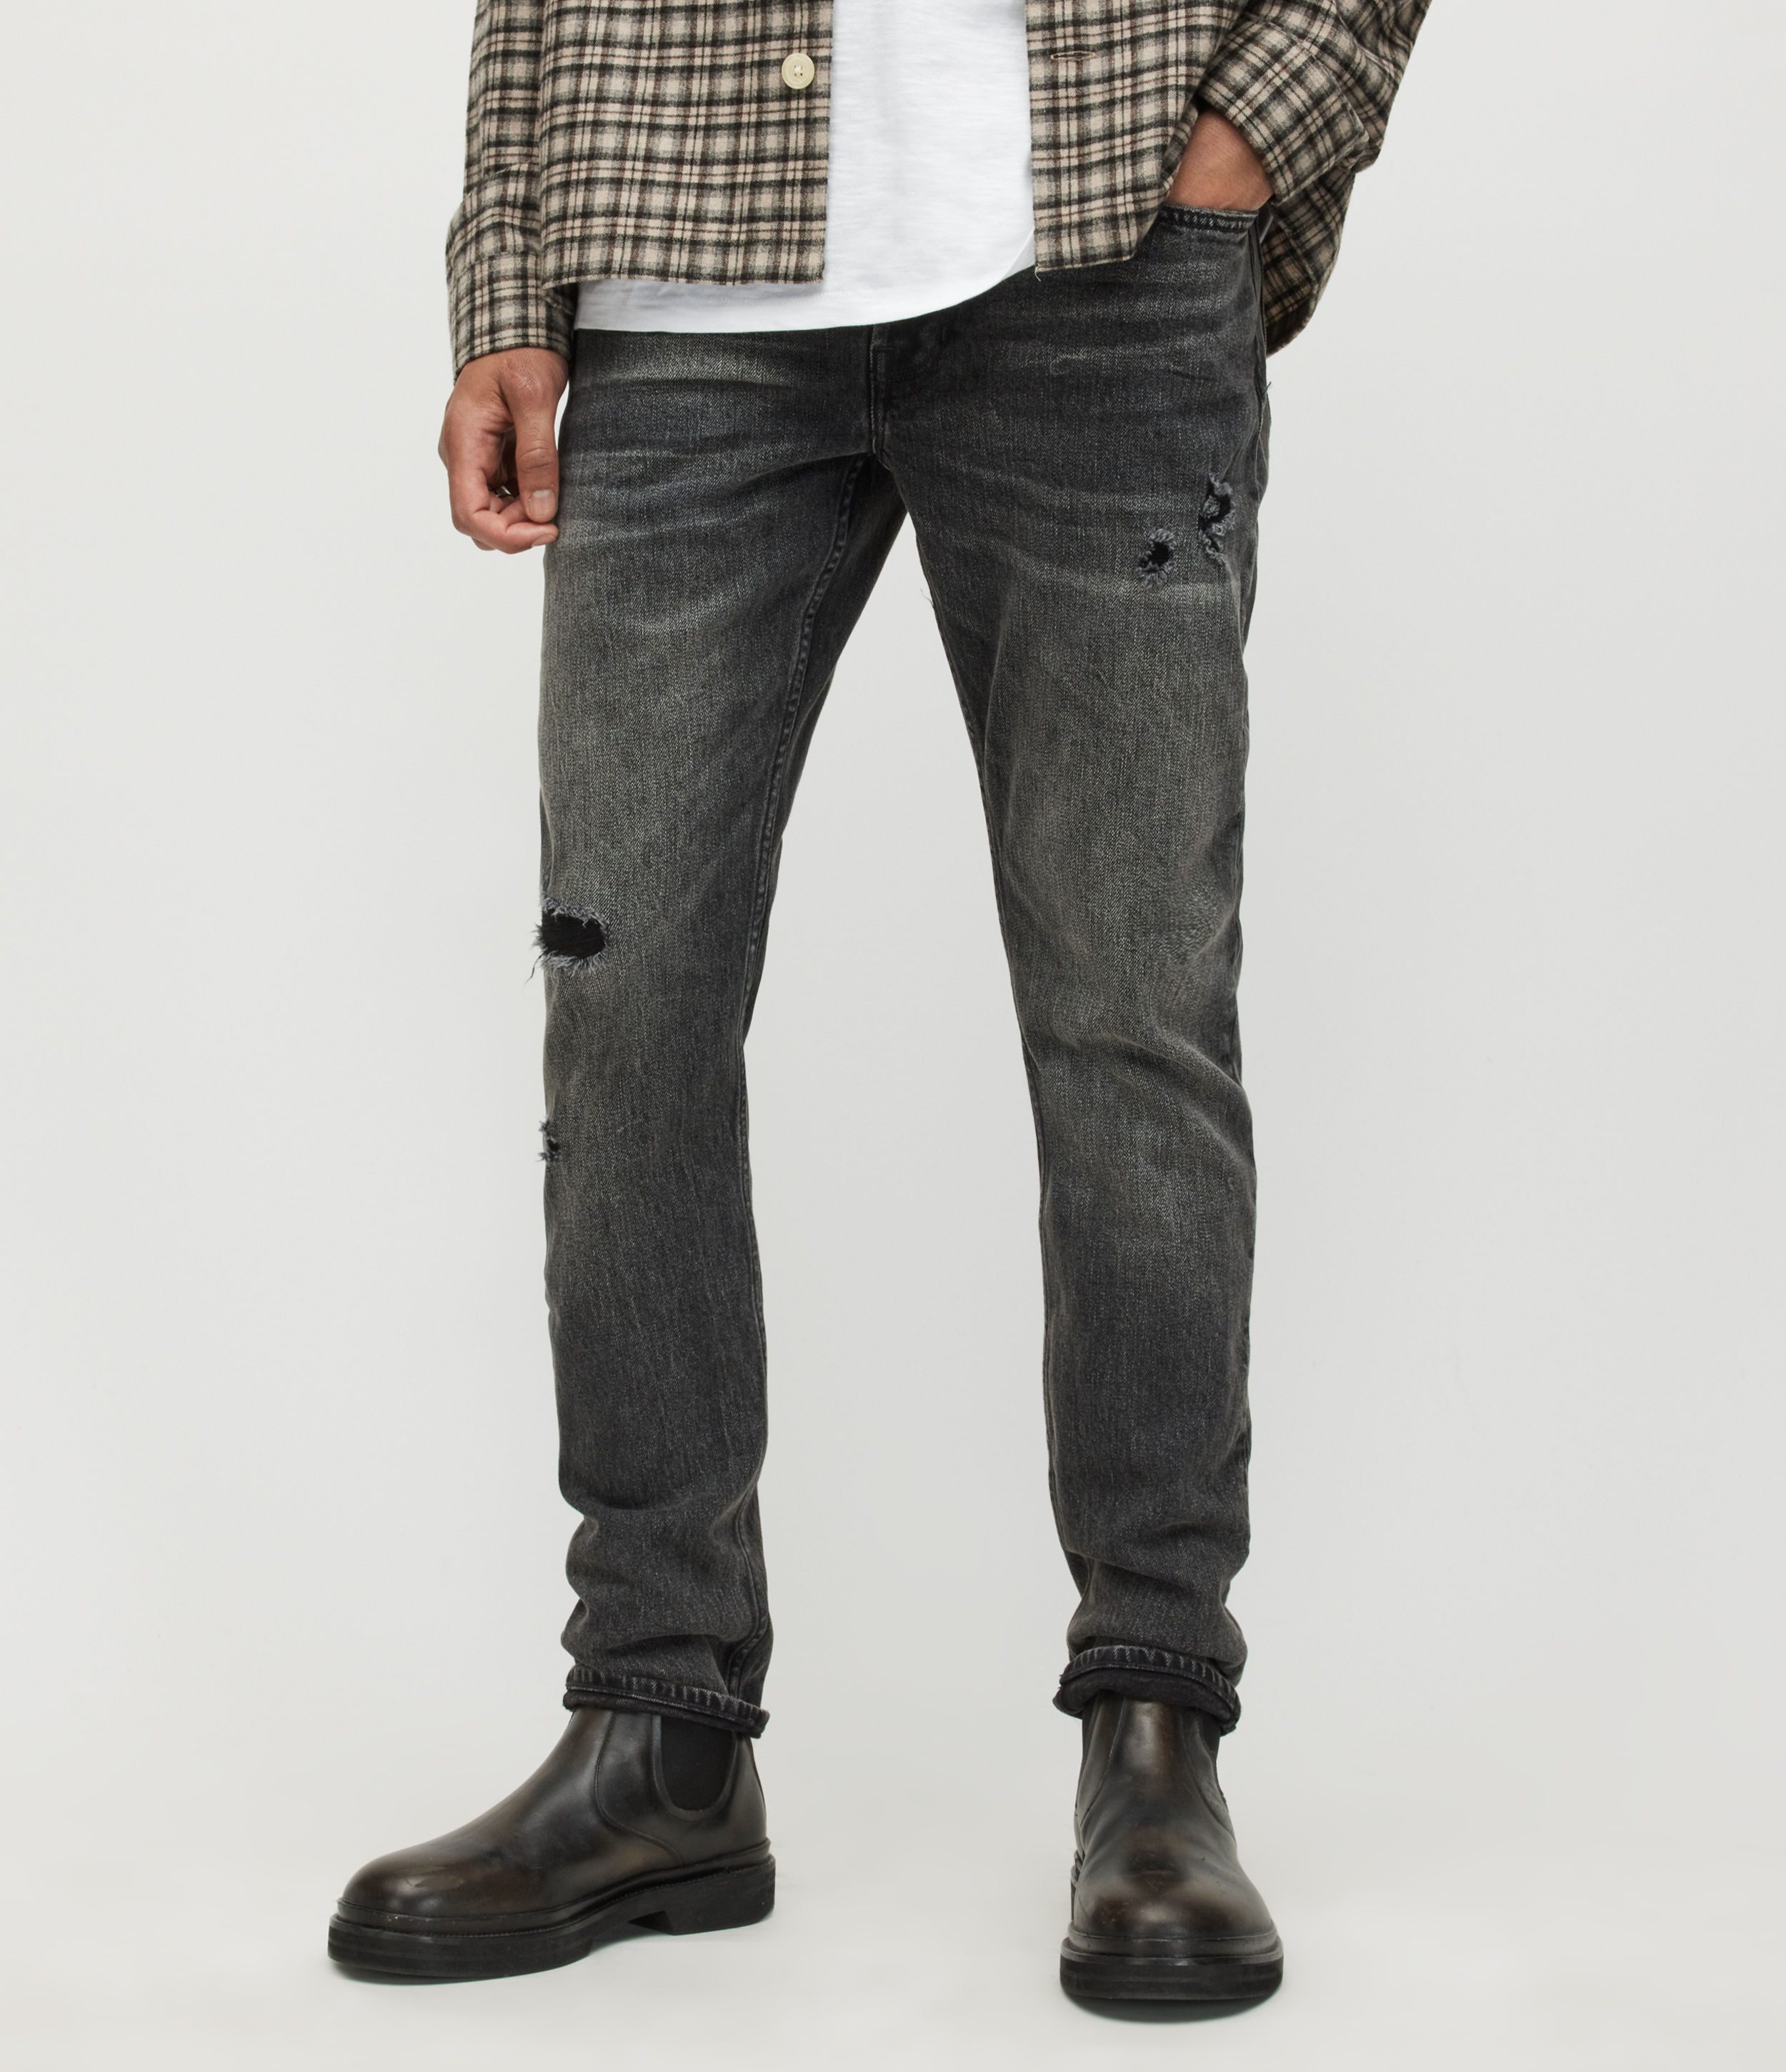 AllSaints Men's Rex Slim Damaged Jeans, Washed Black, Size: 28/L30